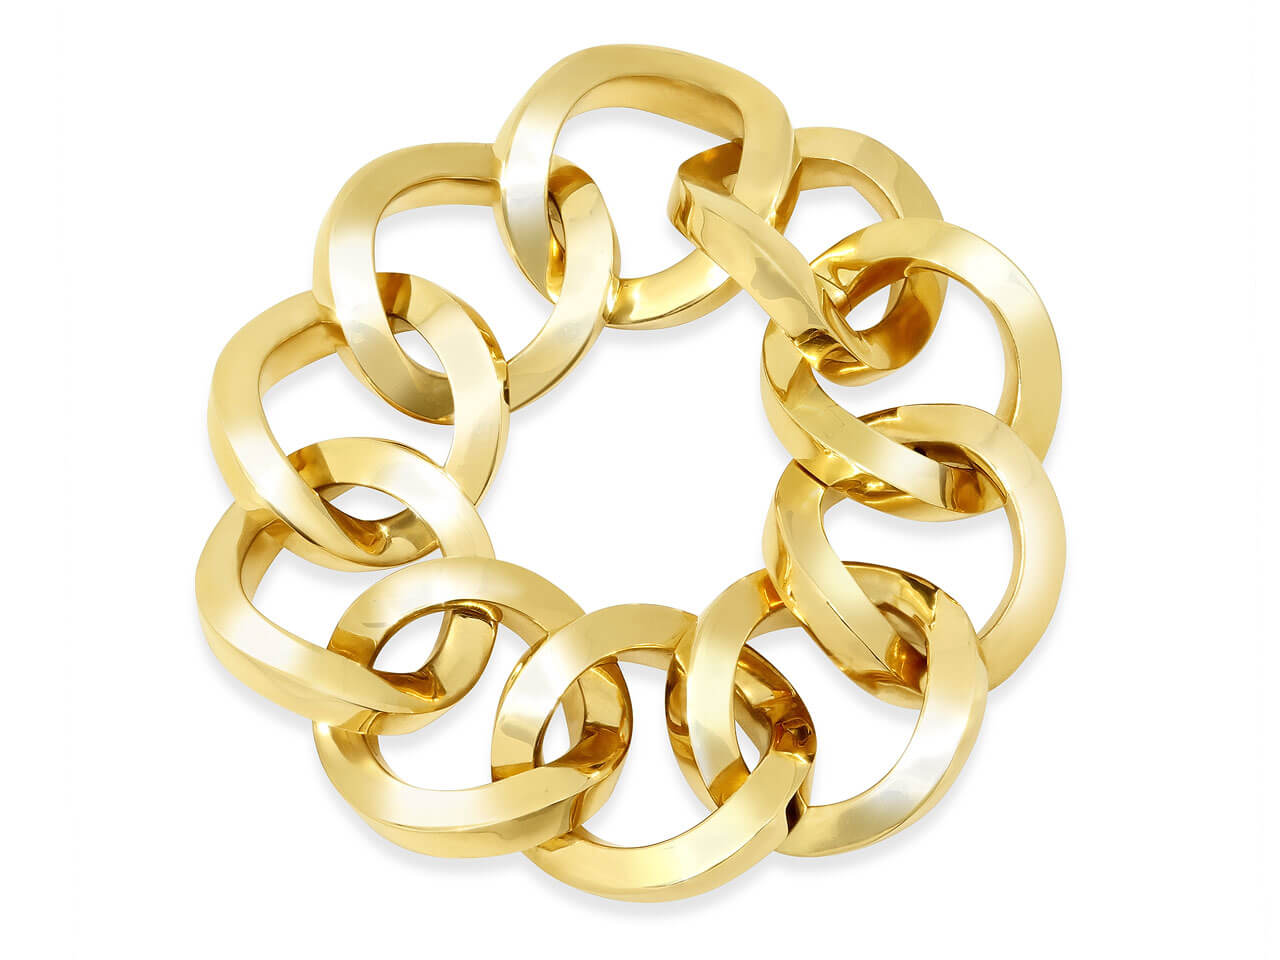 Italian Large Link Bracelet in 18K Gold, by Beladora